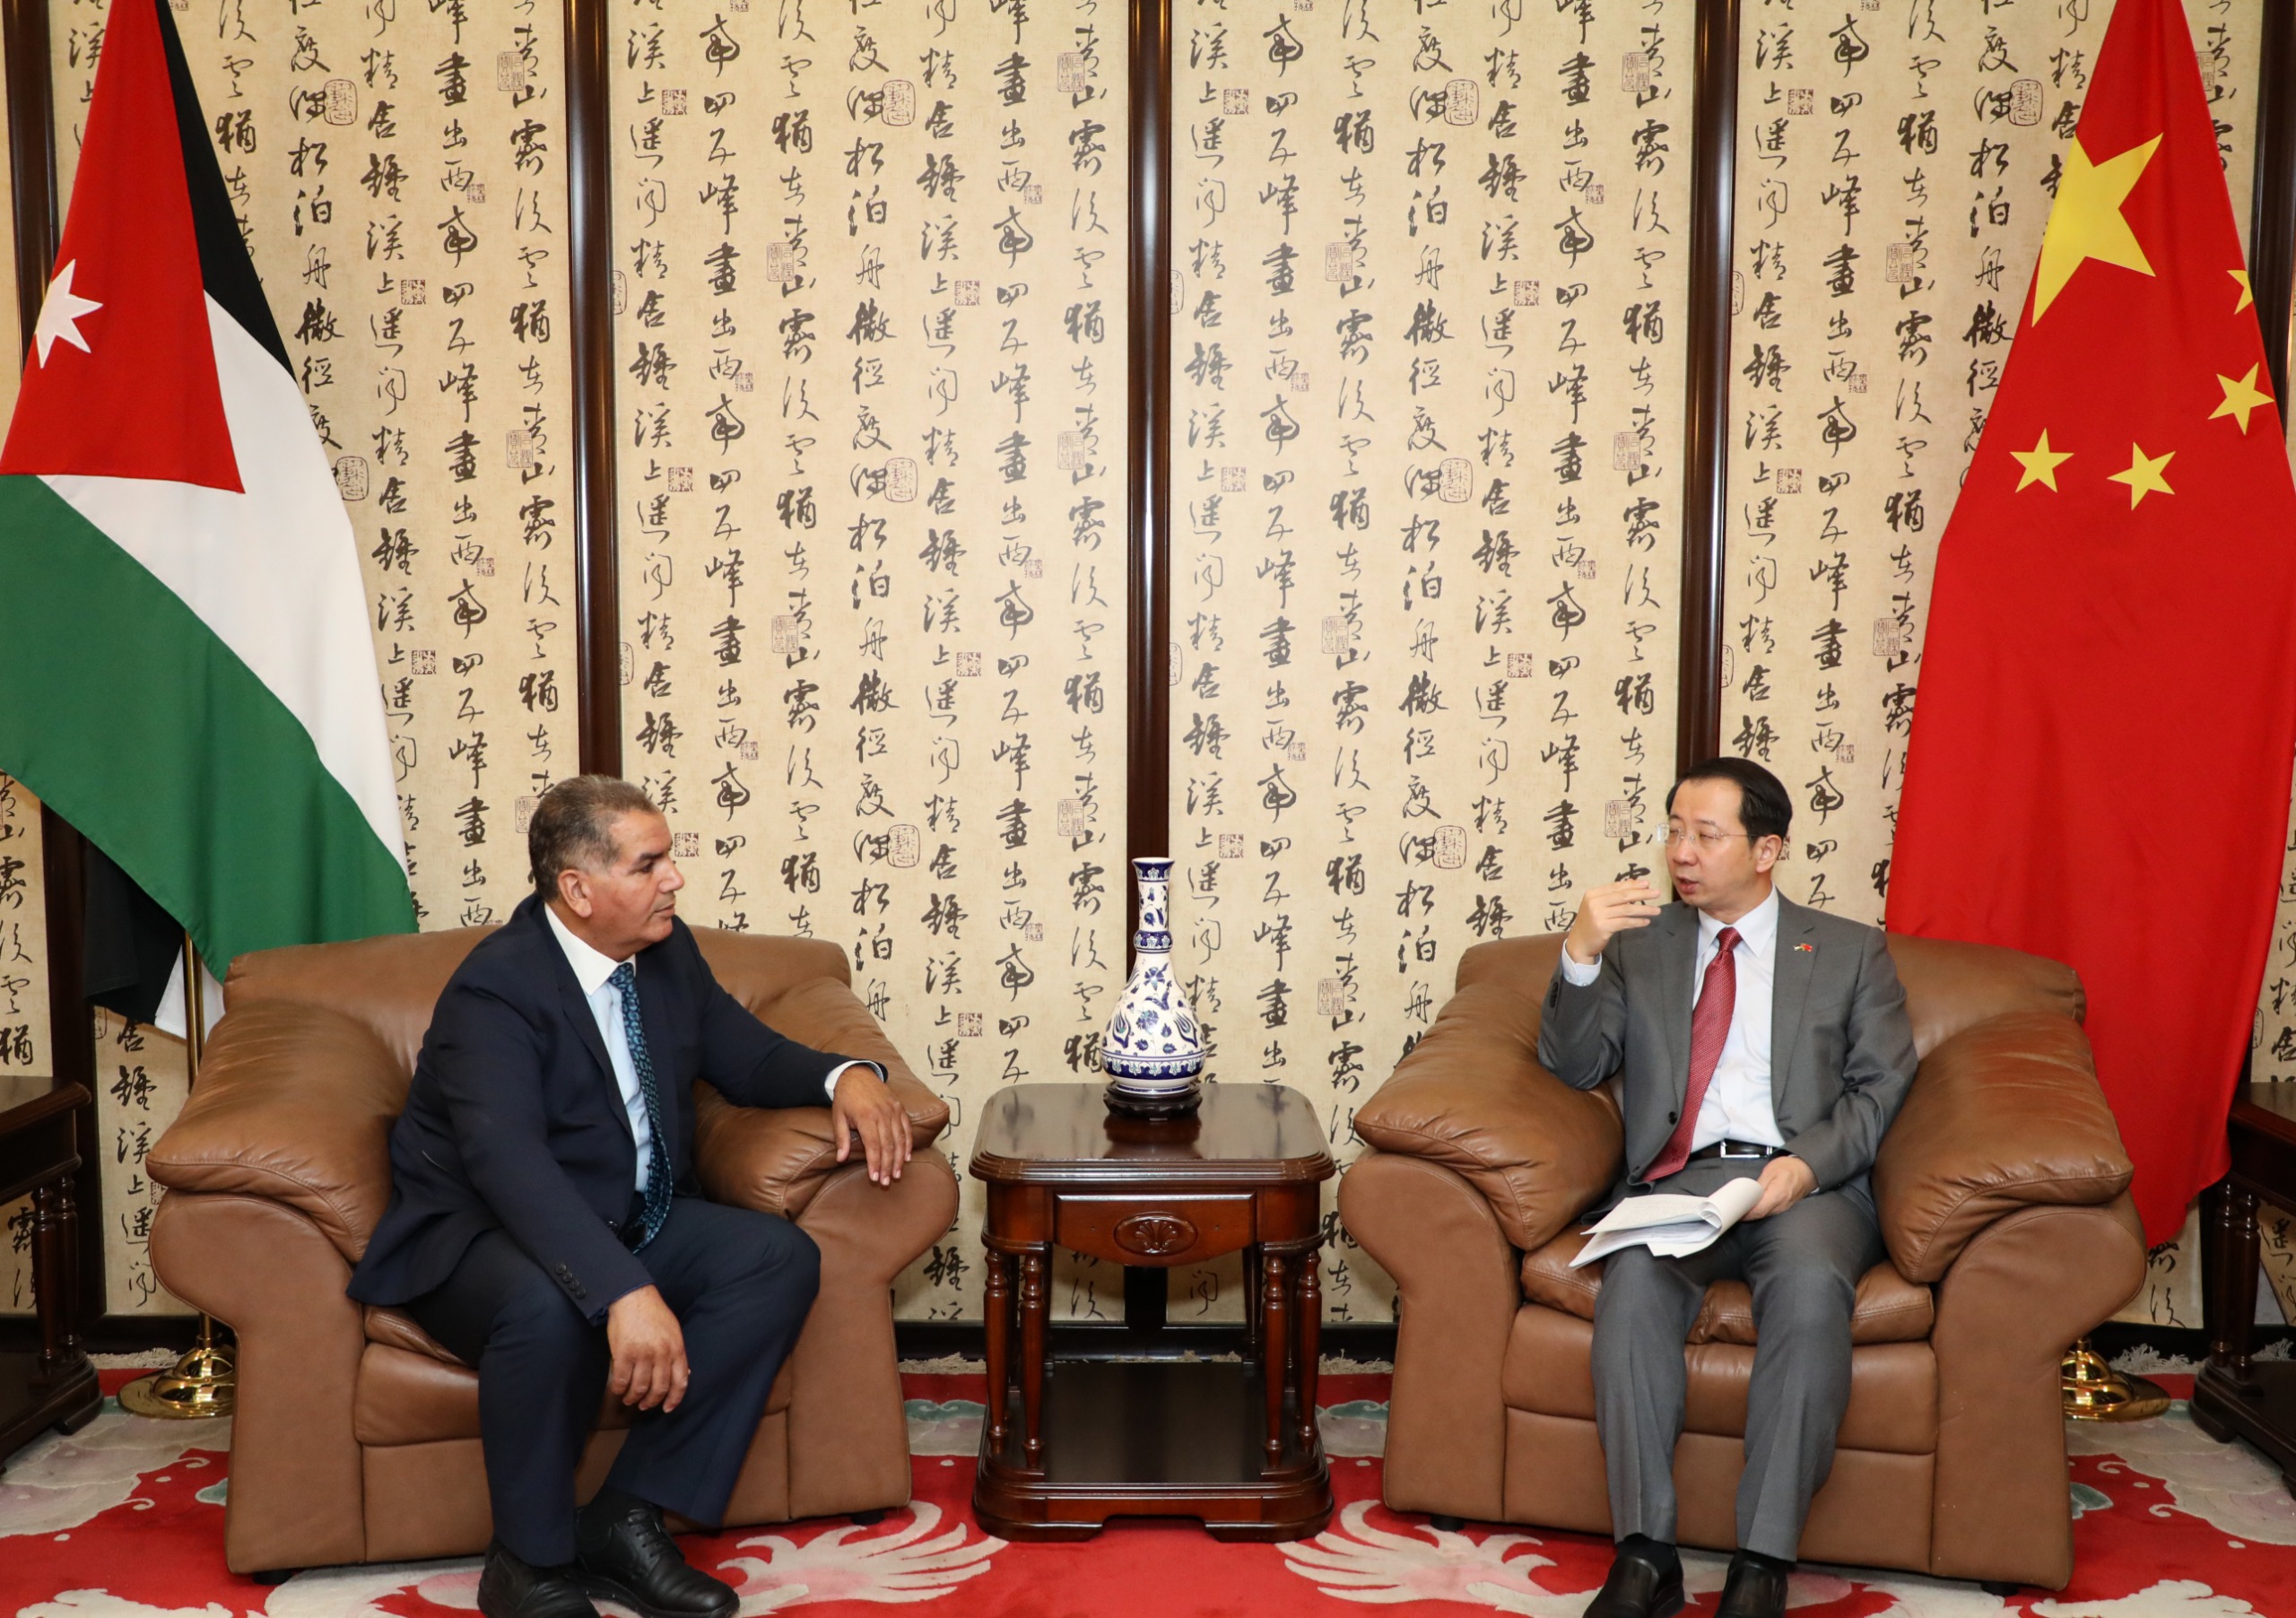  السفير الصيني: الخطوات الإصلاحية الثابتة للأردن والصين فتحت آفاقا أوسع للتعاون